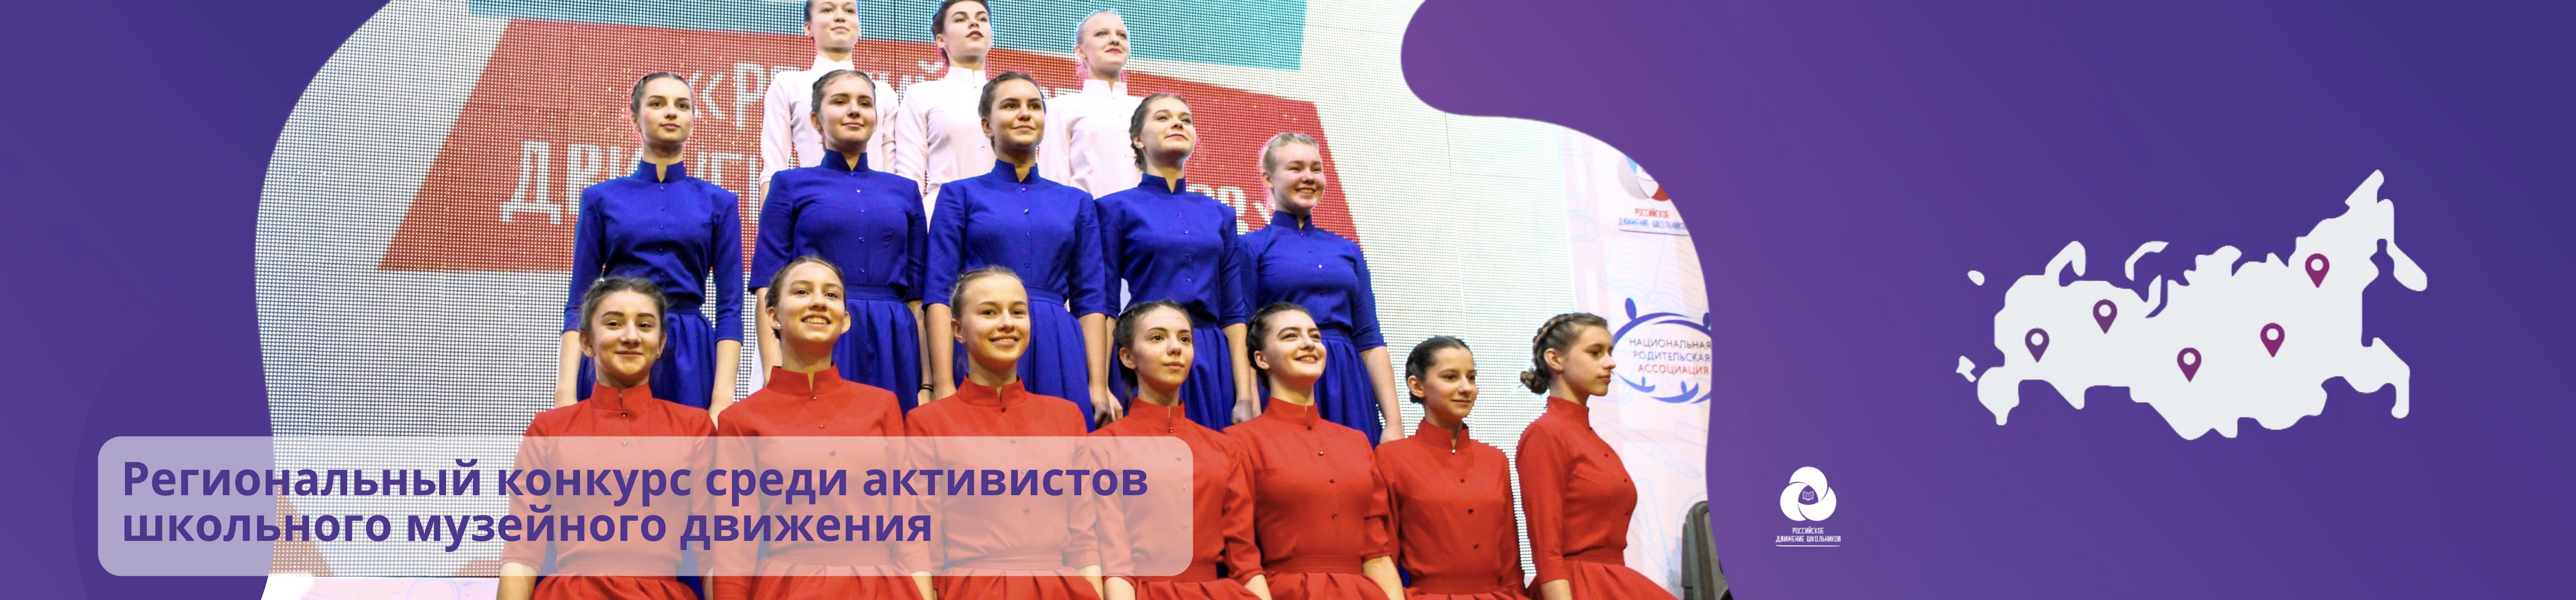 Региональный конкурс среди активистов школьного музейного движения | Оренбургская область